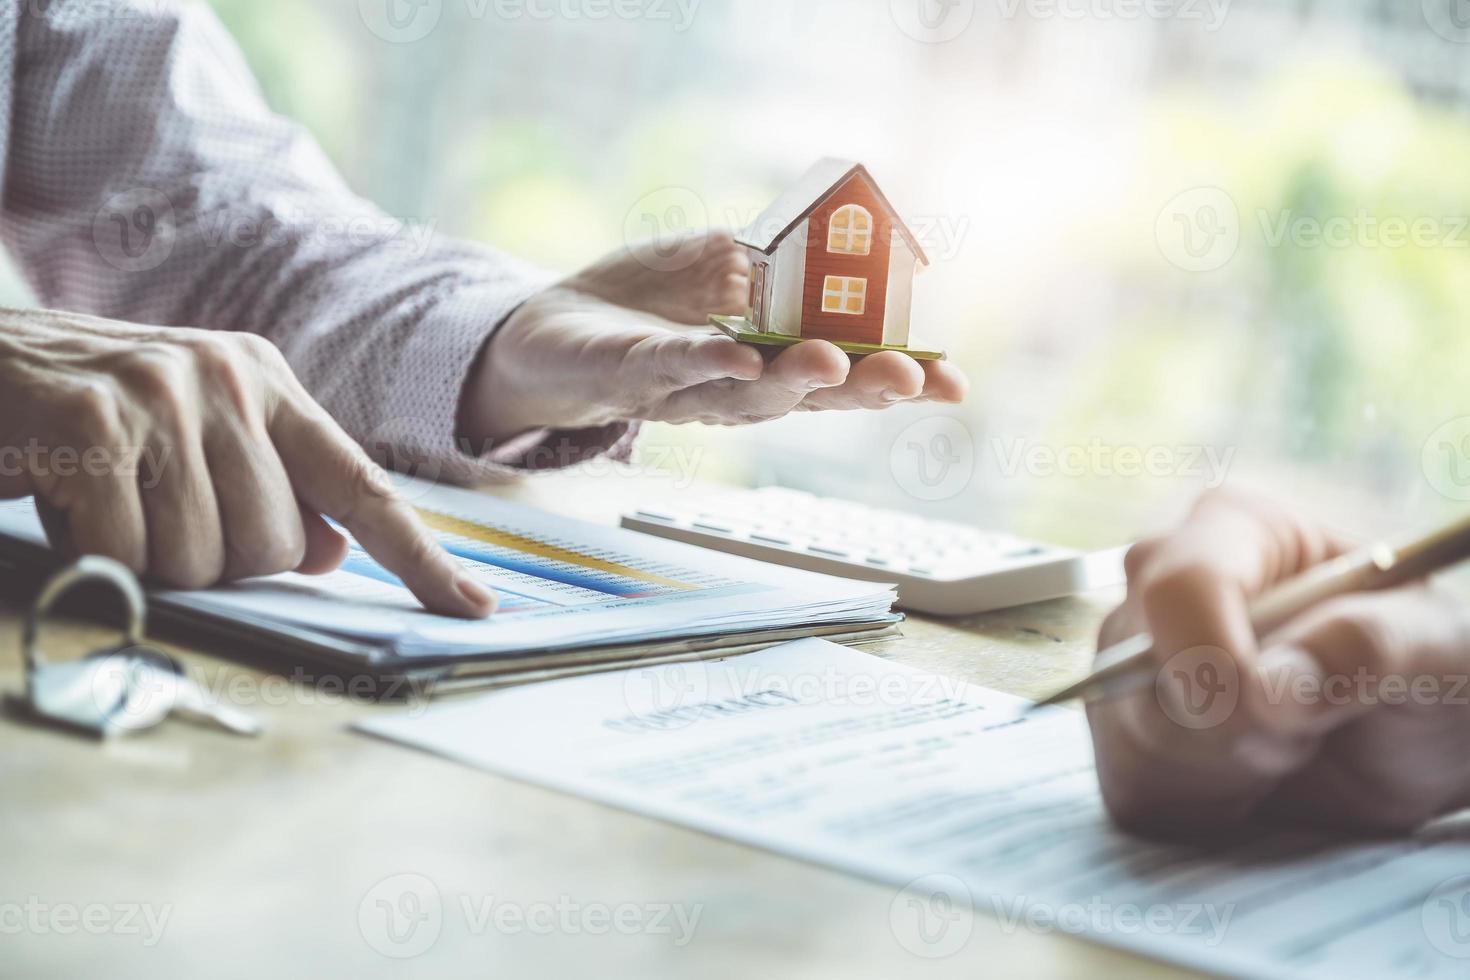 fastighetsmäklare som diskuterar om lån och räntor för att köpa hus till kunder som kommer i kontakt. kontrakt och avtalskoncept. foto